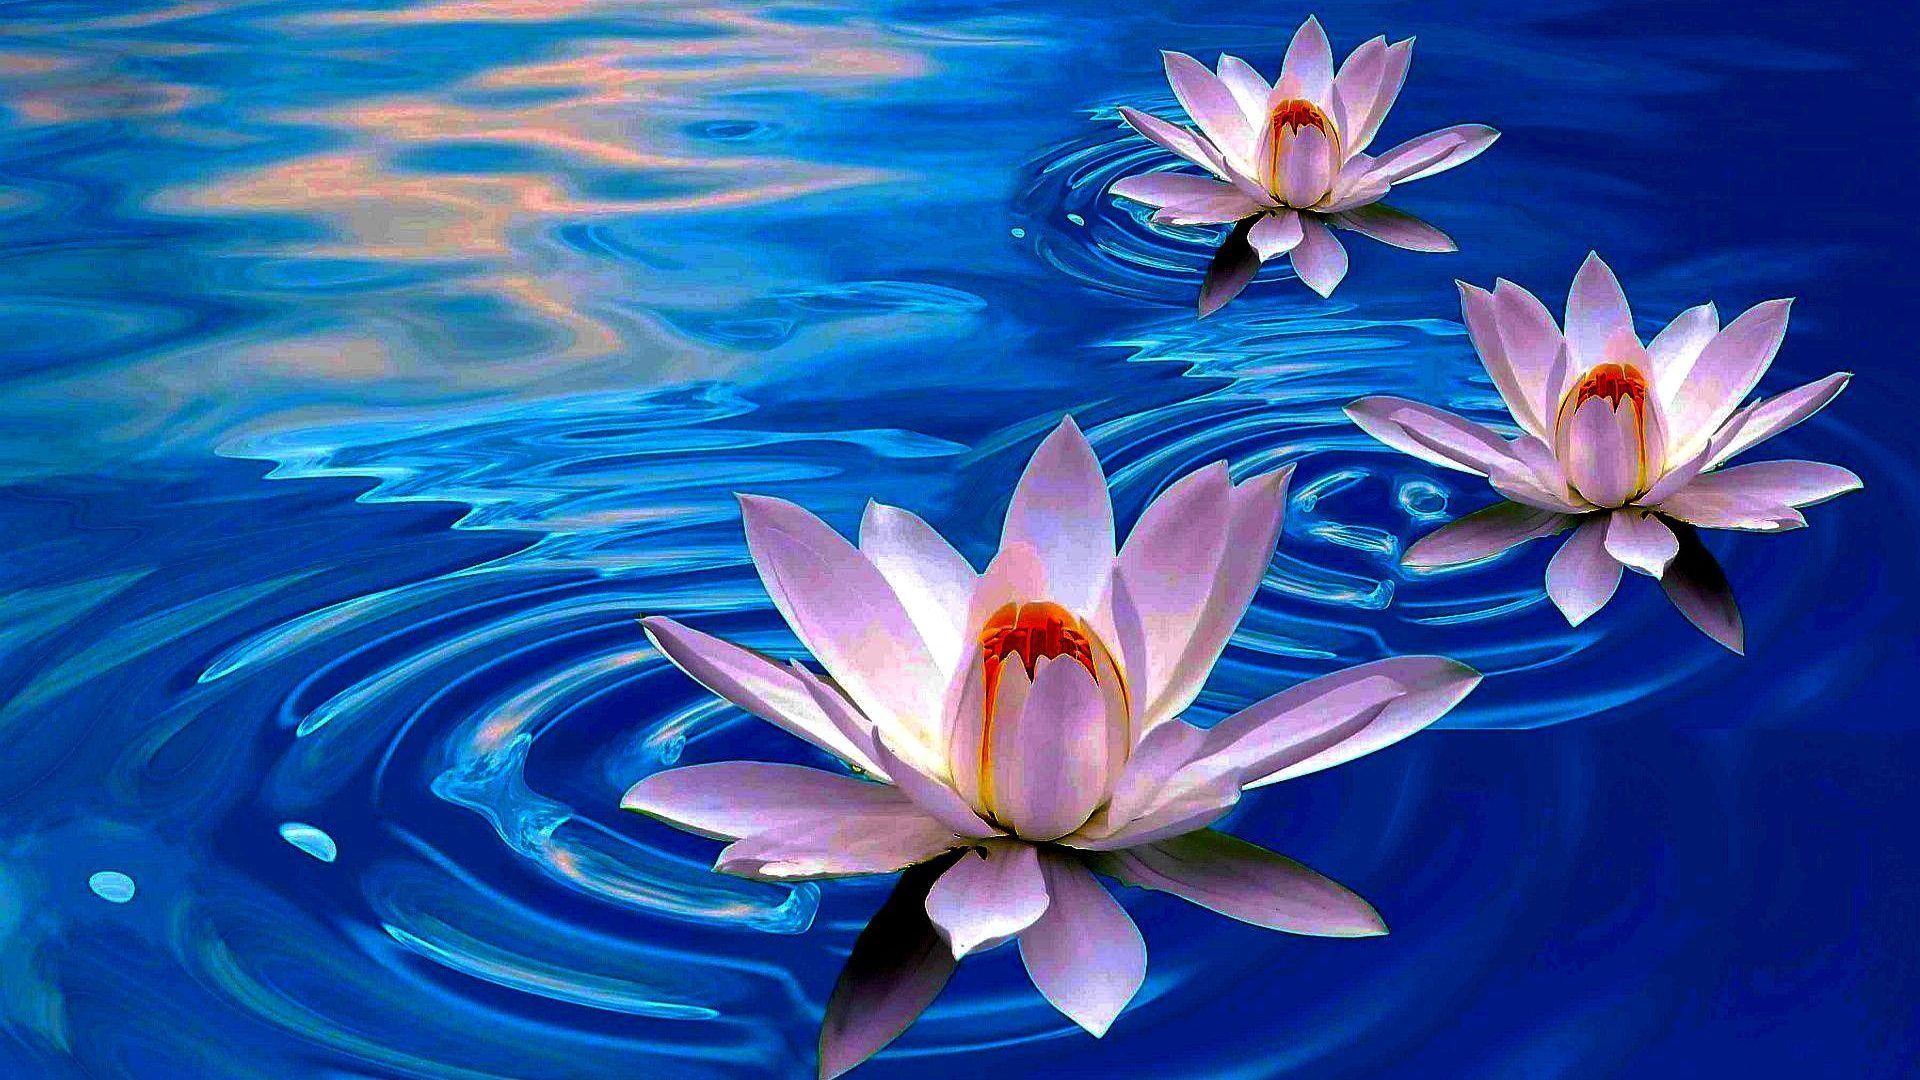 Lotus Flower Wallpaper Images  Free Download on Freepik